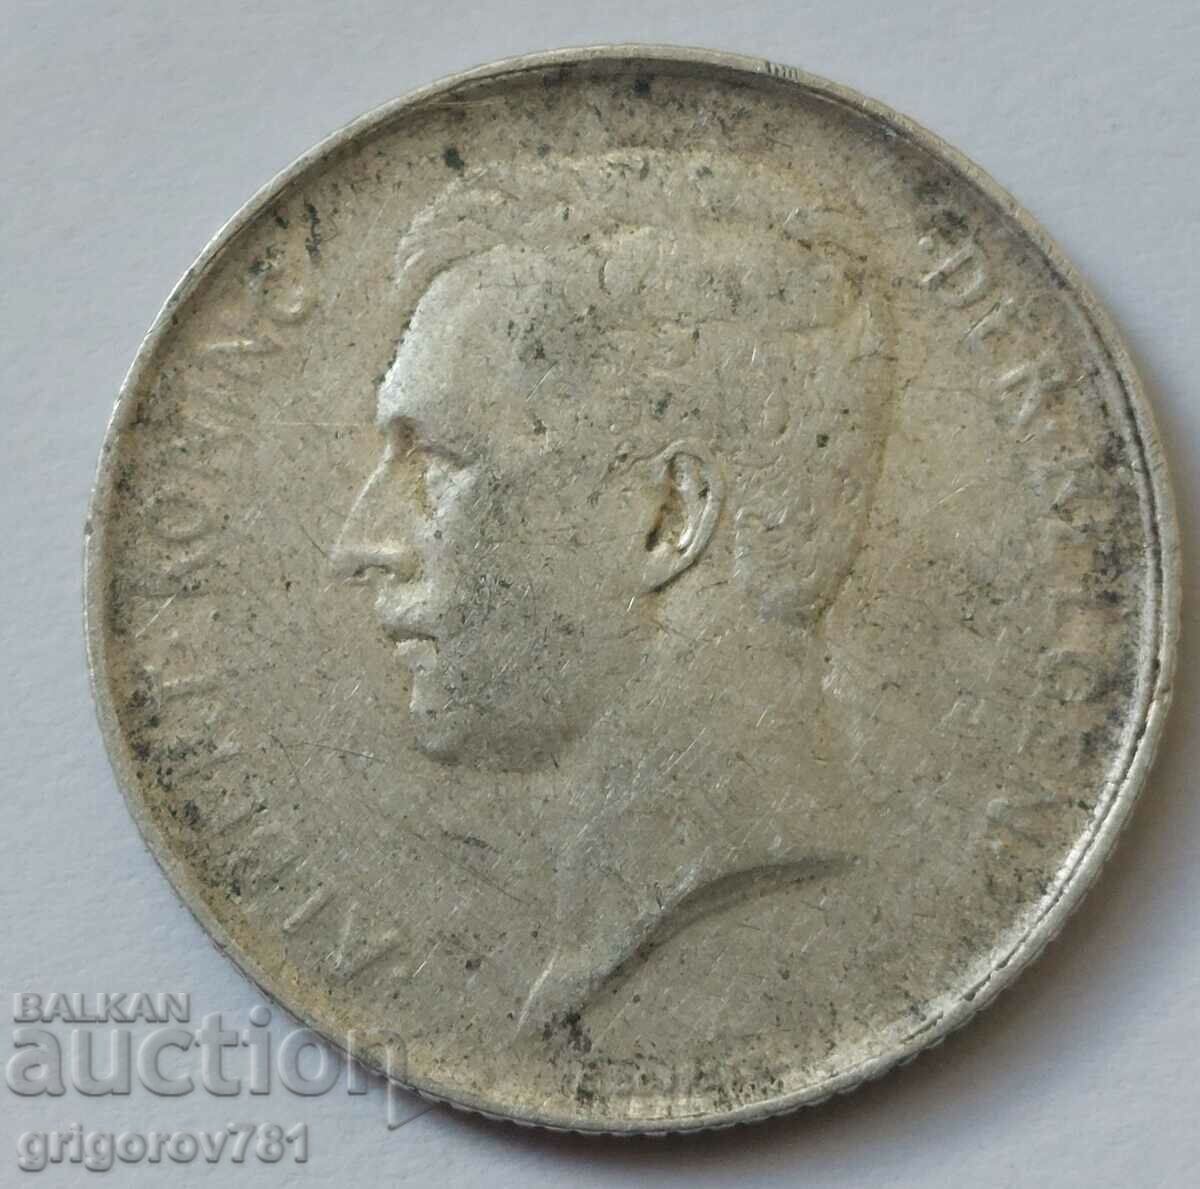 Ασημένιο 1 φράγκου Βέλγιο 1912 - ασημένιο νόμισμα #64